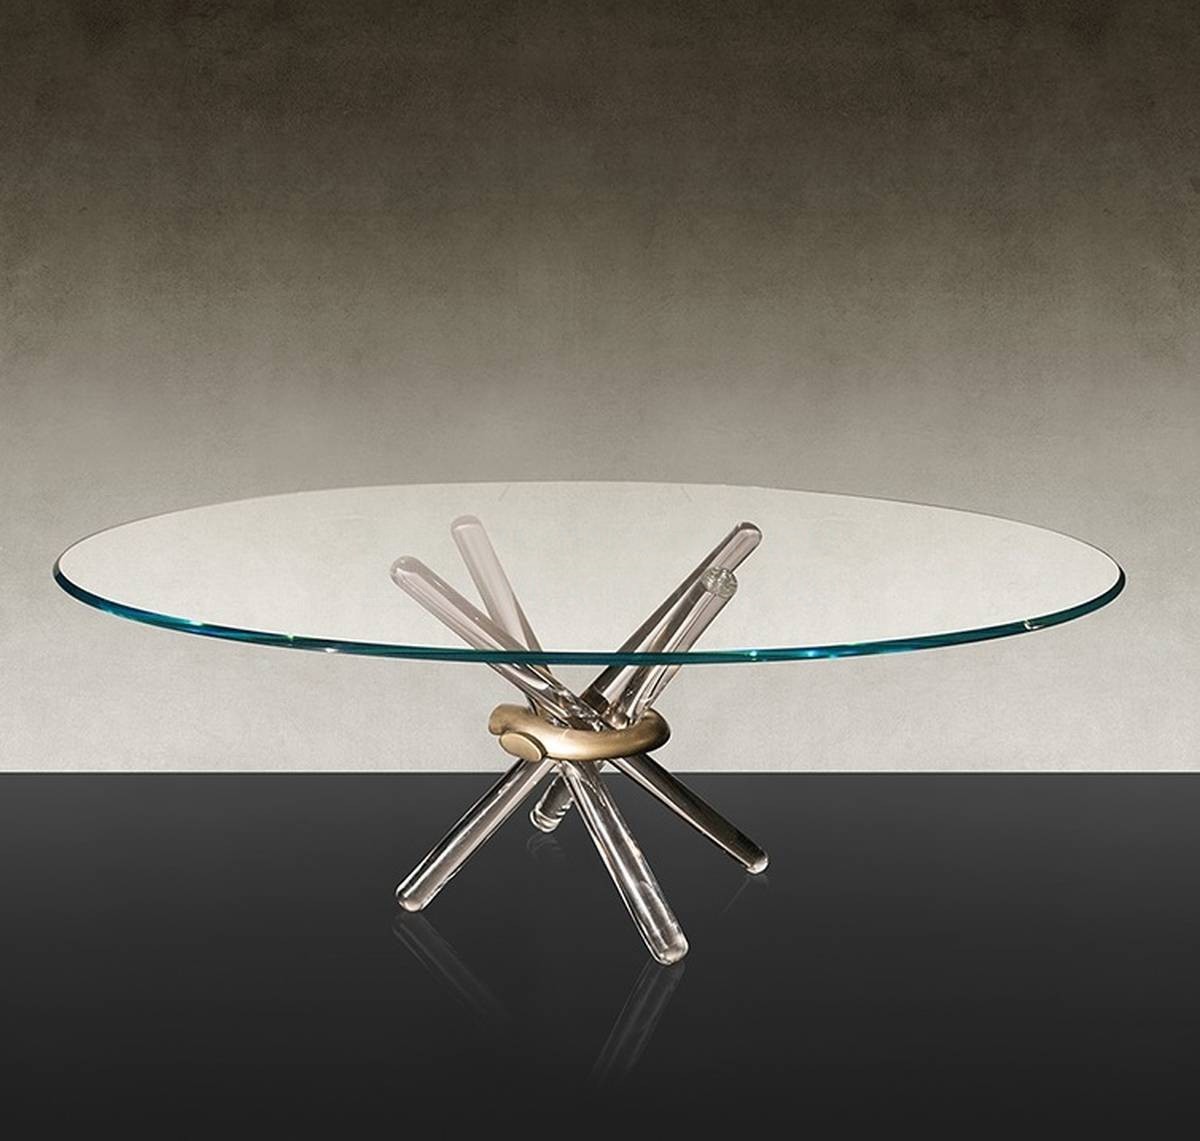 Обеденный стол Arlequin Table из Италии фабрики REFLEX ANGELO